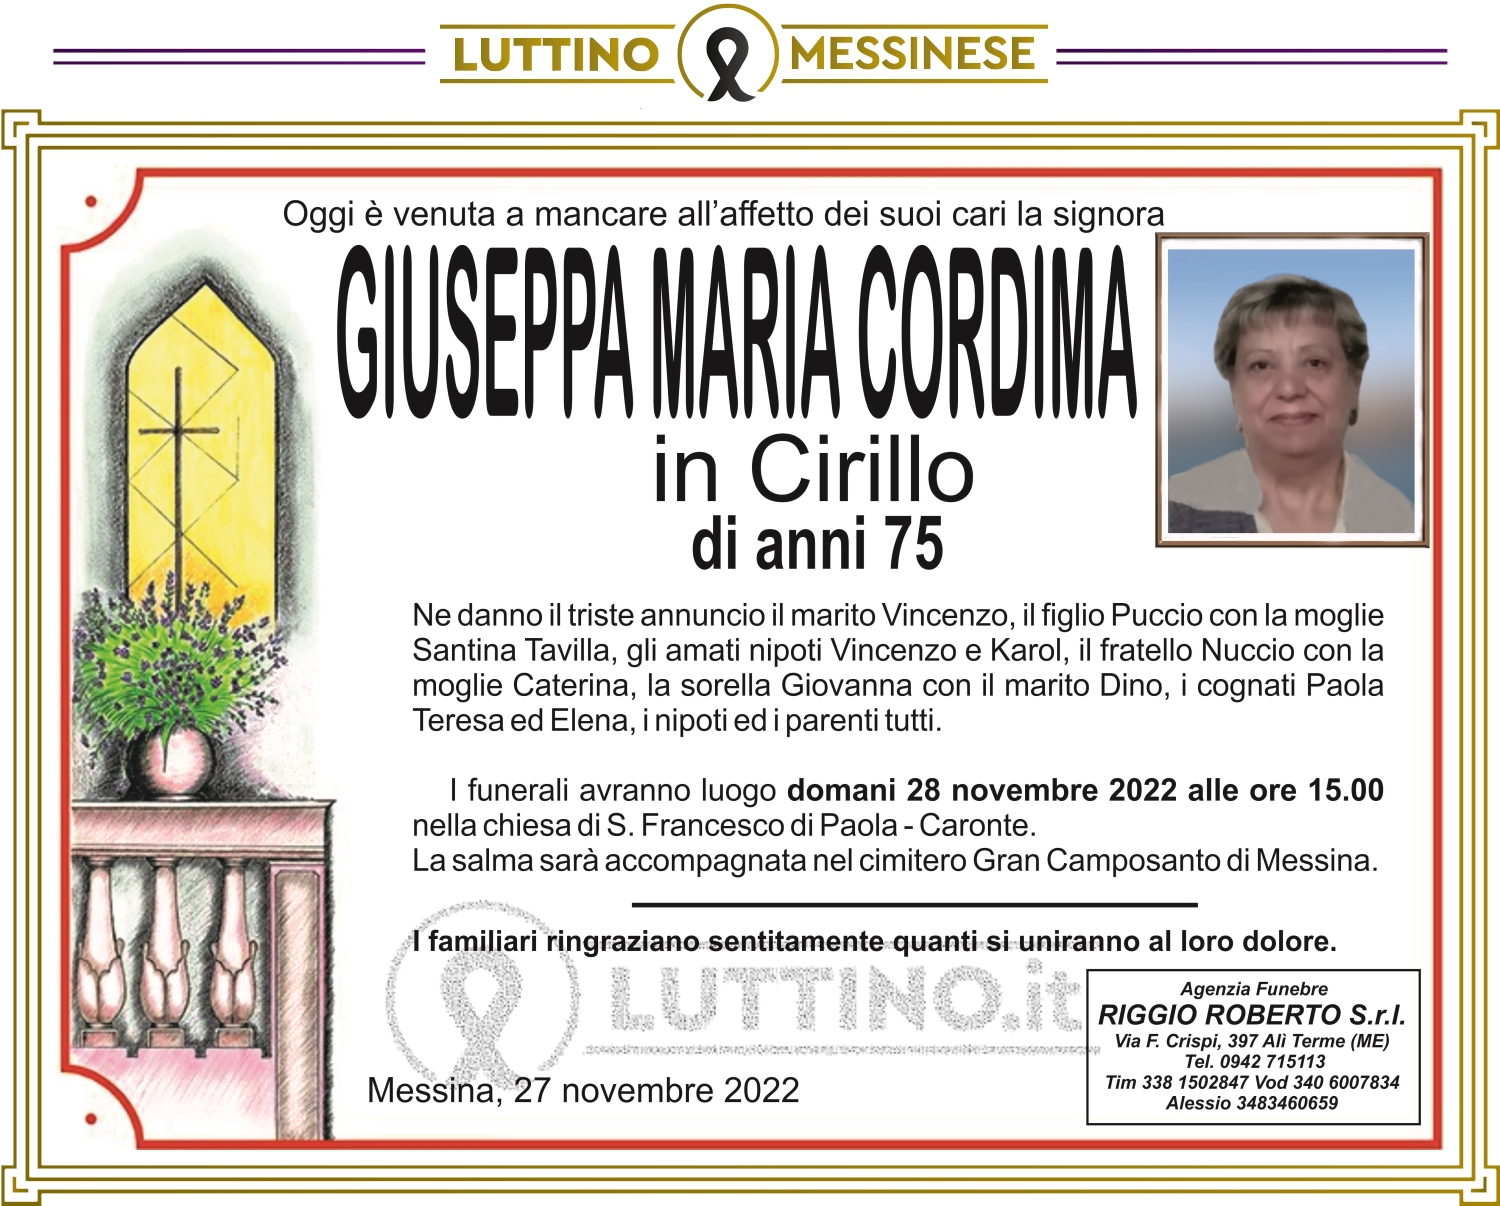 Giuseppa Maria  Cordima